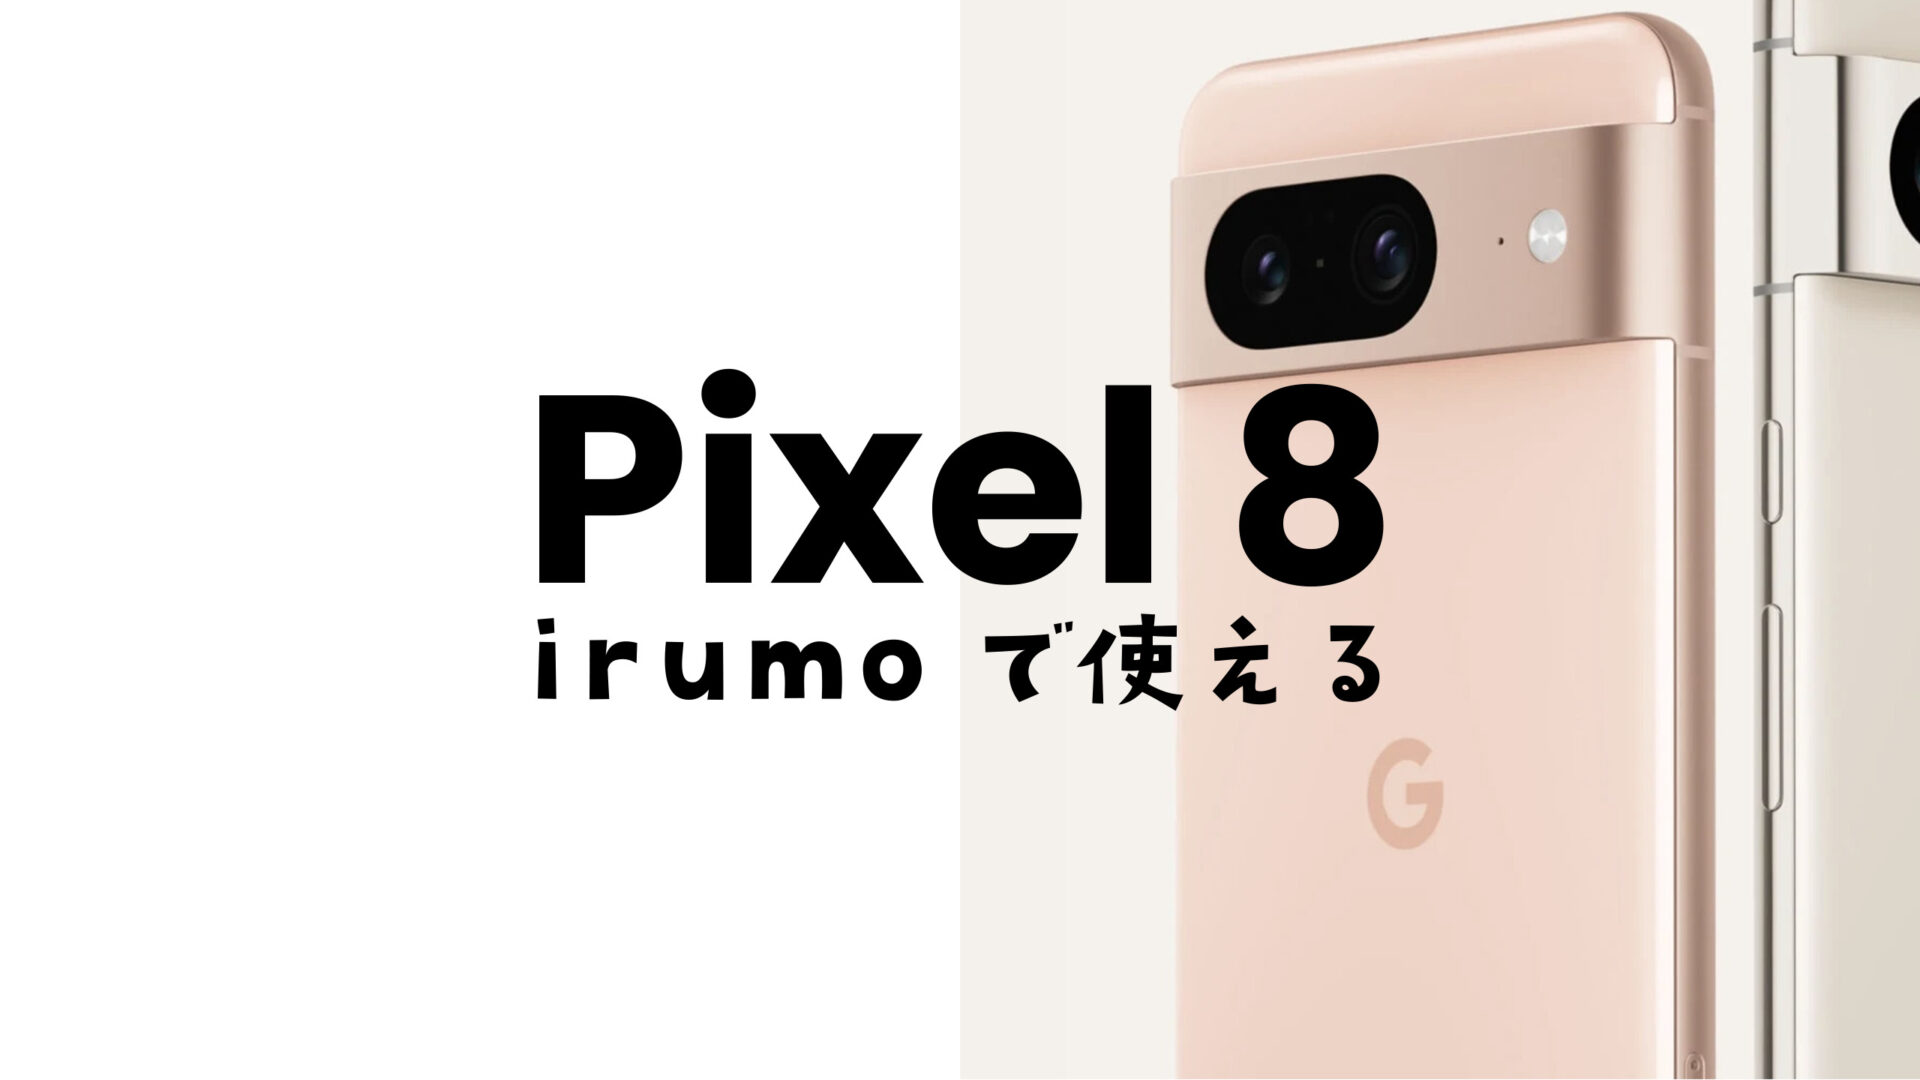 irumo (イルモ)でGoogle Pixel 8が使える。ピクセル8 Proも対応機種として発表。のサムネイル画像